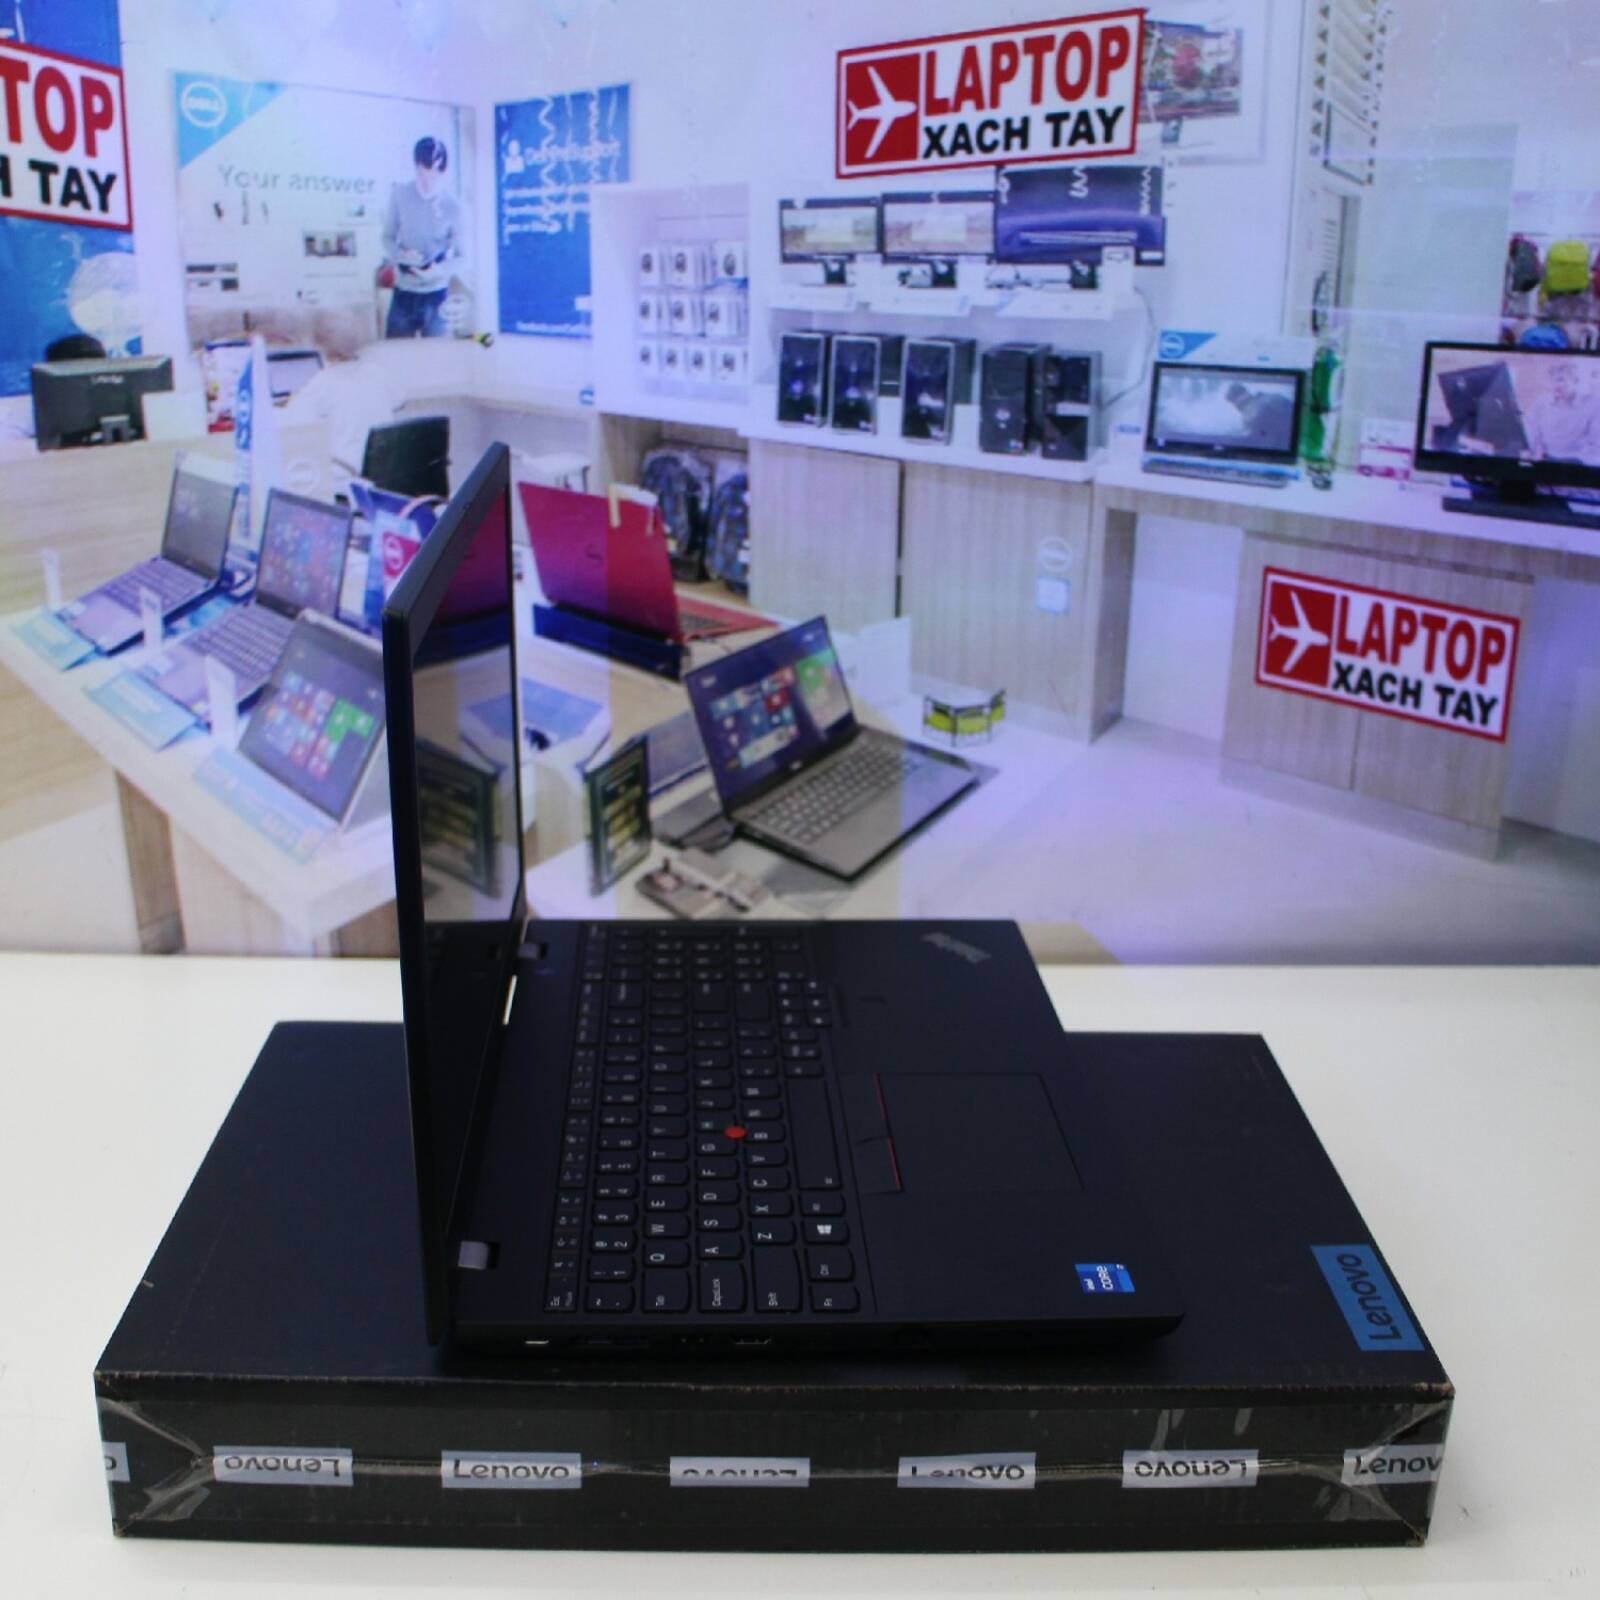 Lenovo ThinkPad L15 Gen Intel Business Laptop, 15.6" FHD IPS 250 nits,  i7-1165G7, |16GB RAM, 512GB SSD|, FP,HDMI,Backlit Keyboard,Win 10 Pro 